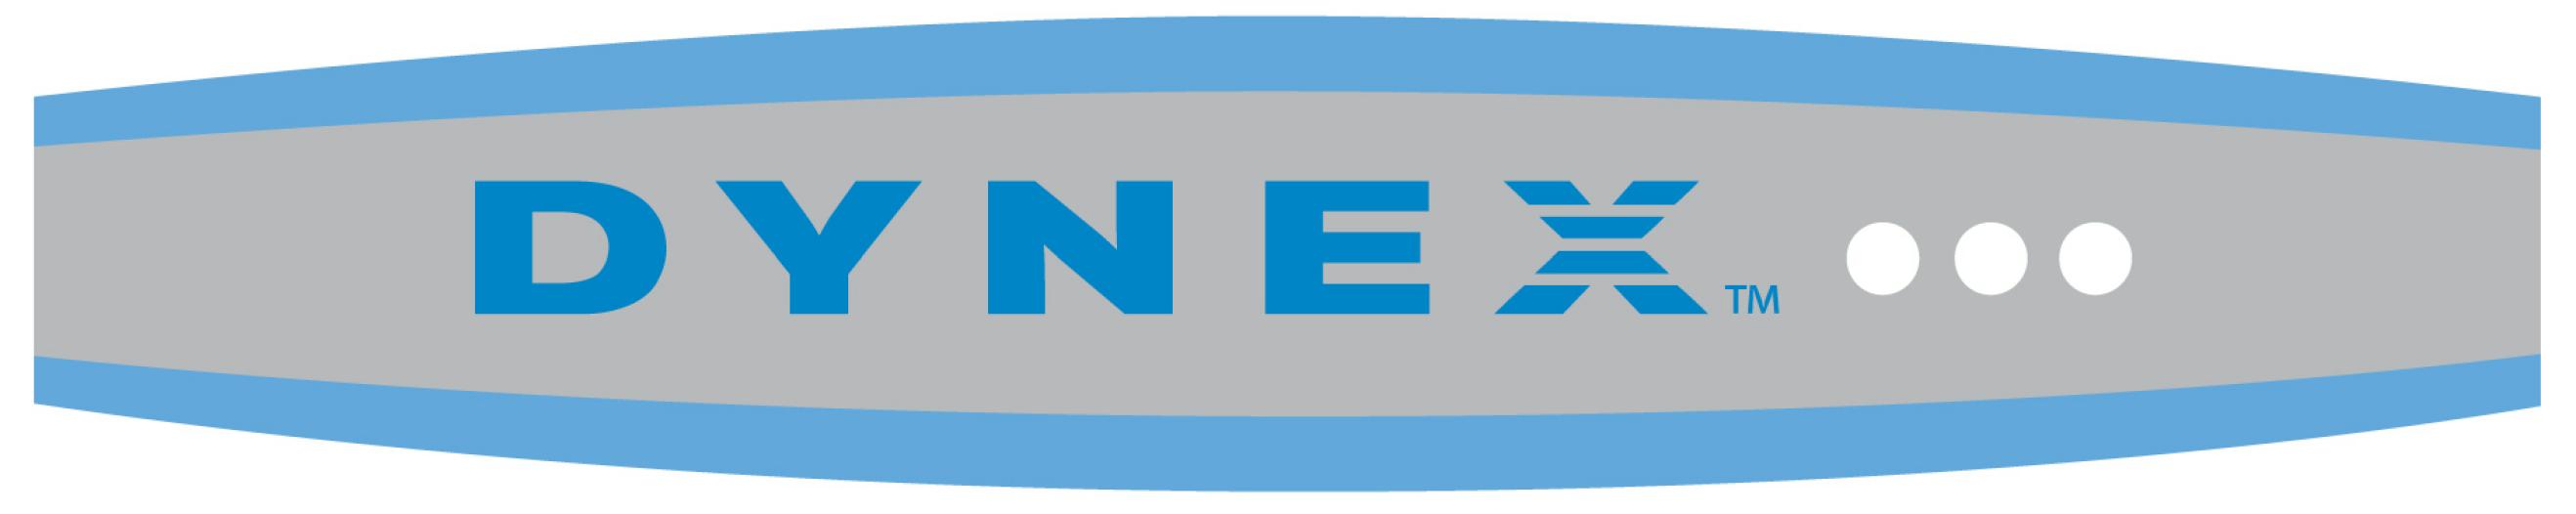 Dynex Logo png